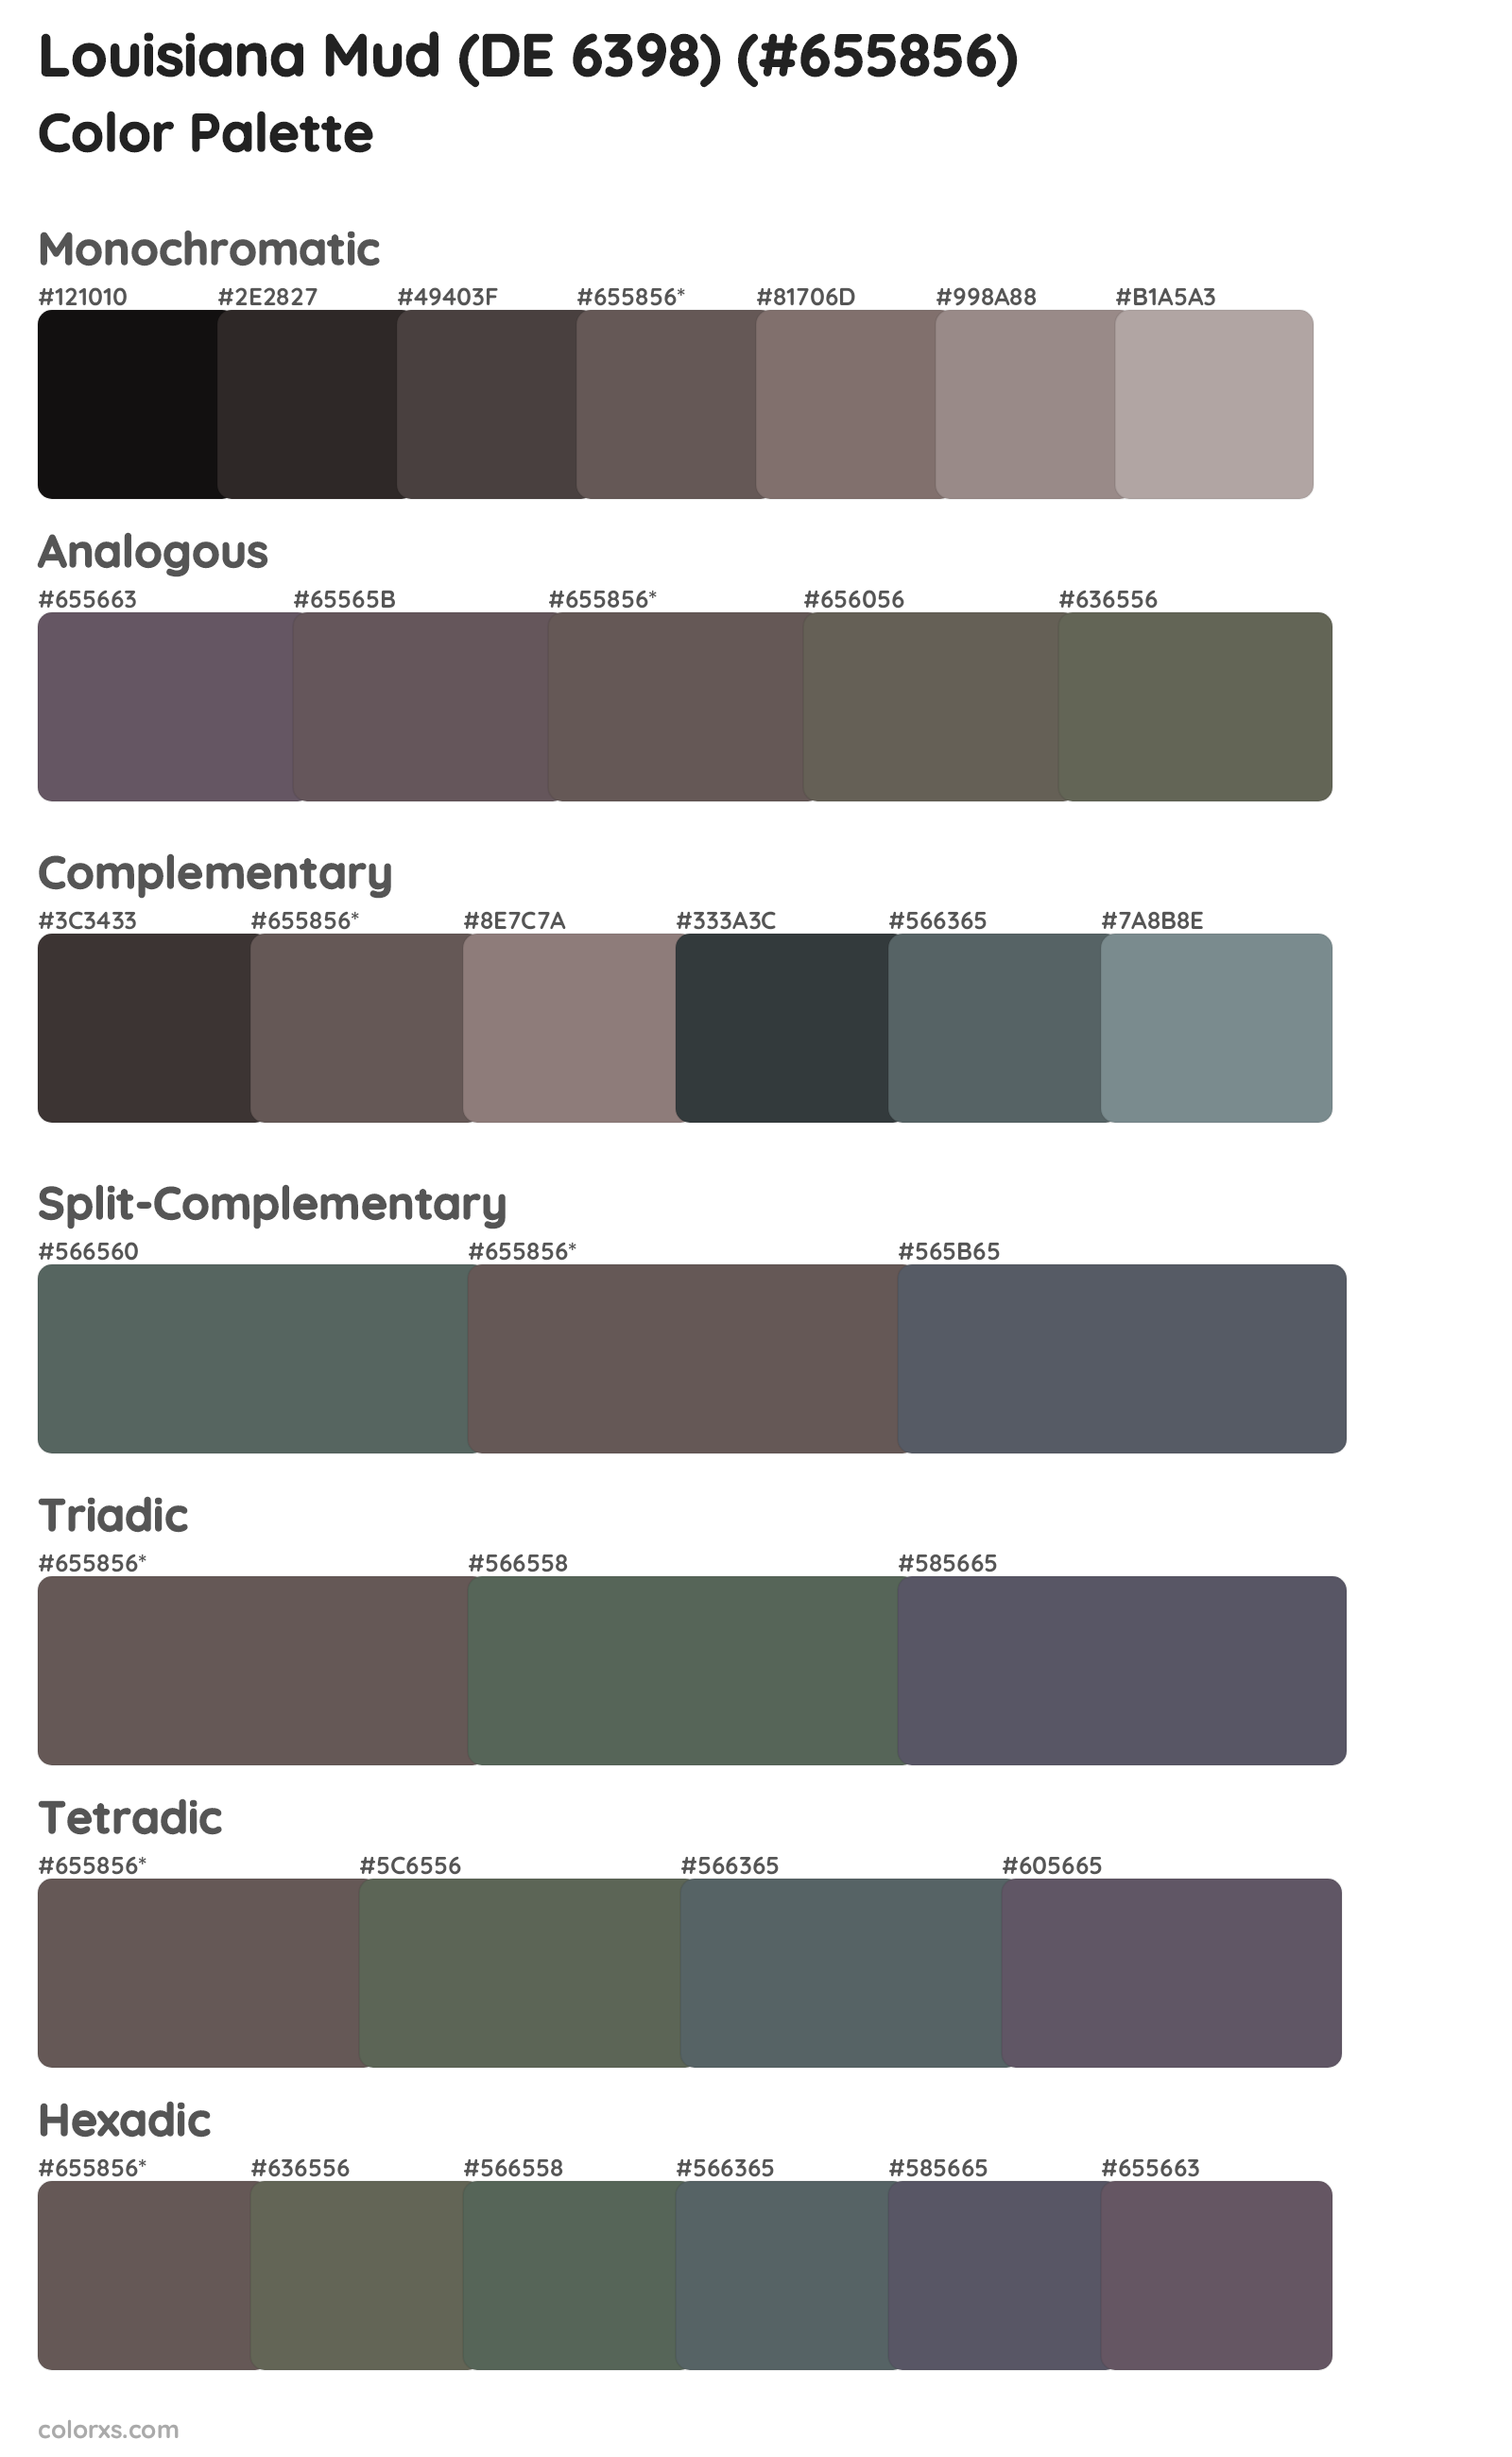 Louisiana Mud (DE 6398) Color Scheme Palettes